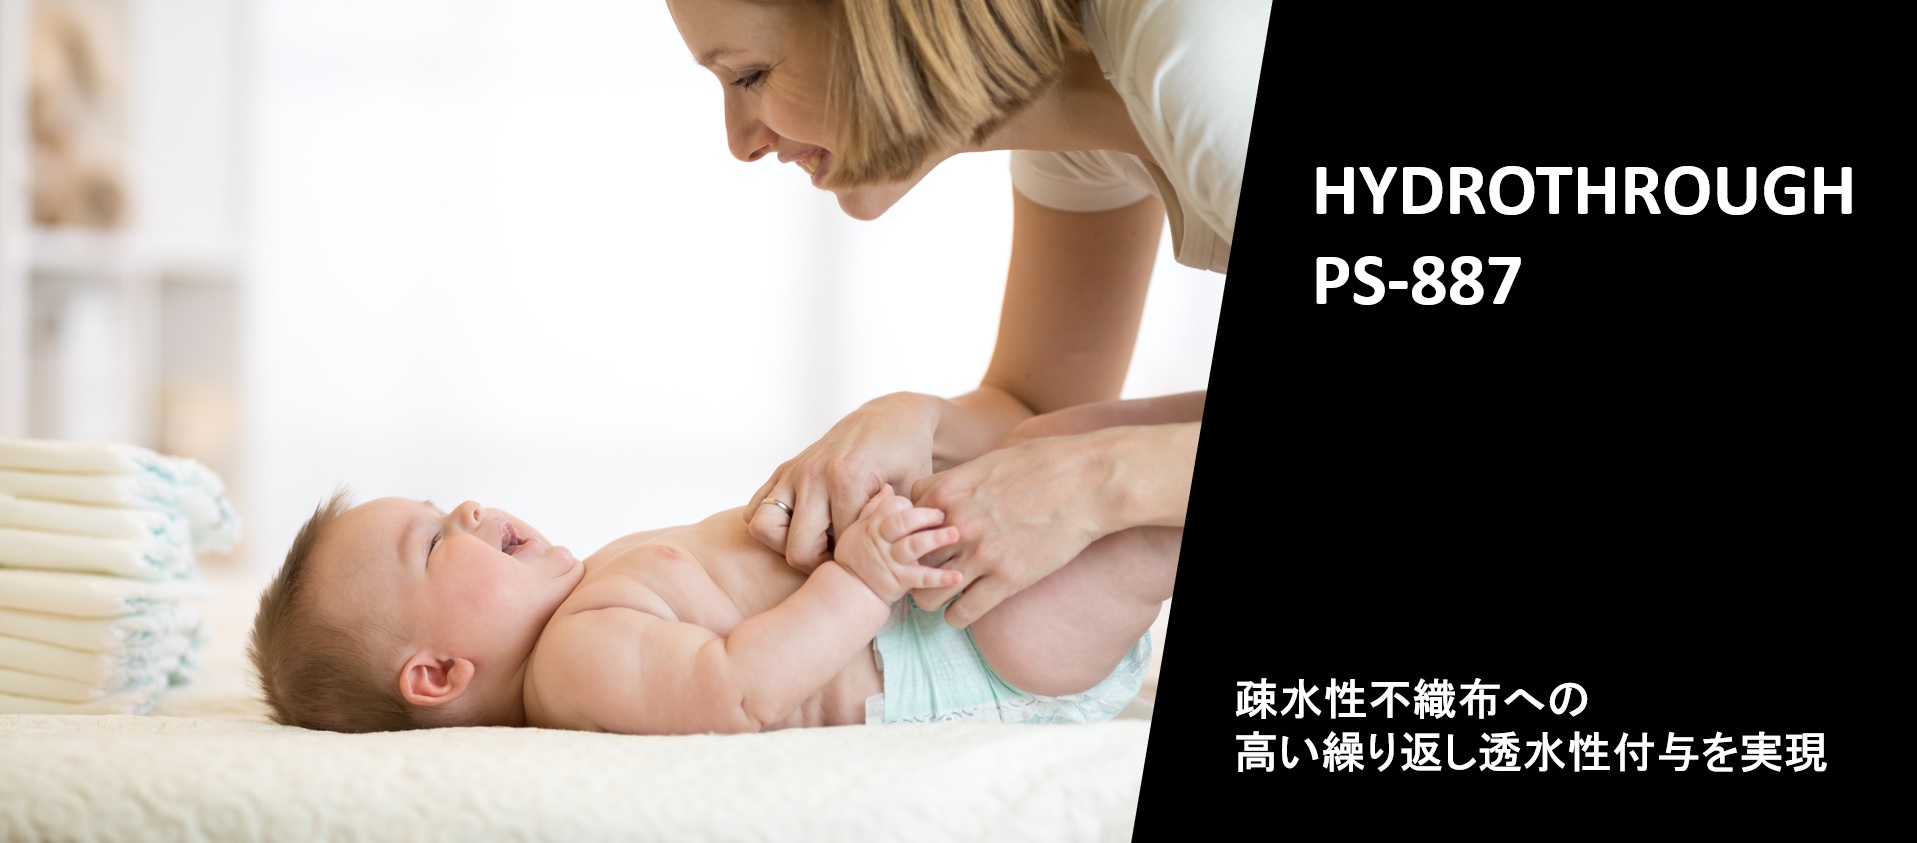 不織布用耐久親水化剤『ハイドロスルー PS-887』製品紹介ページを公開いたしました。